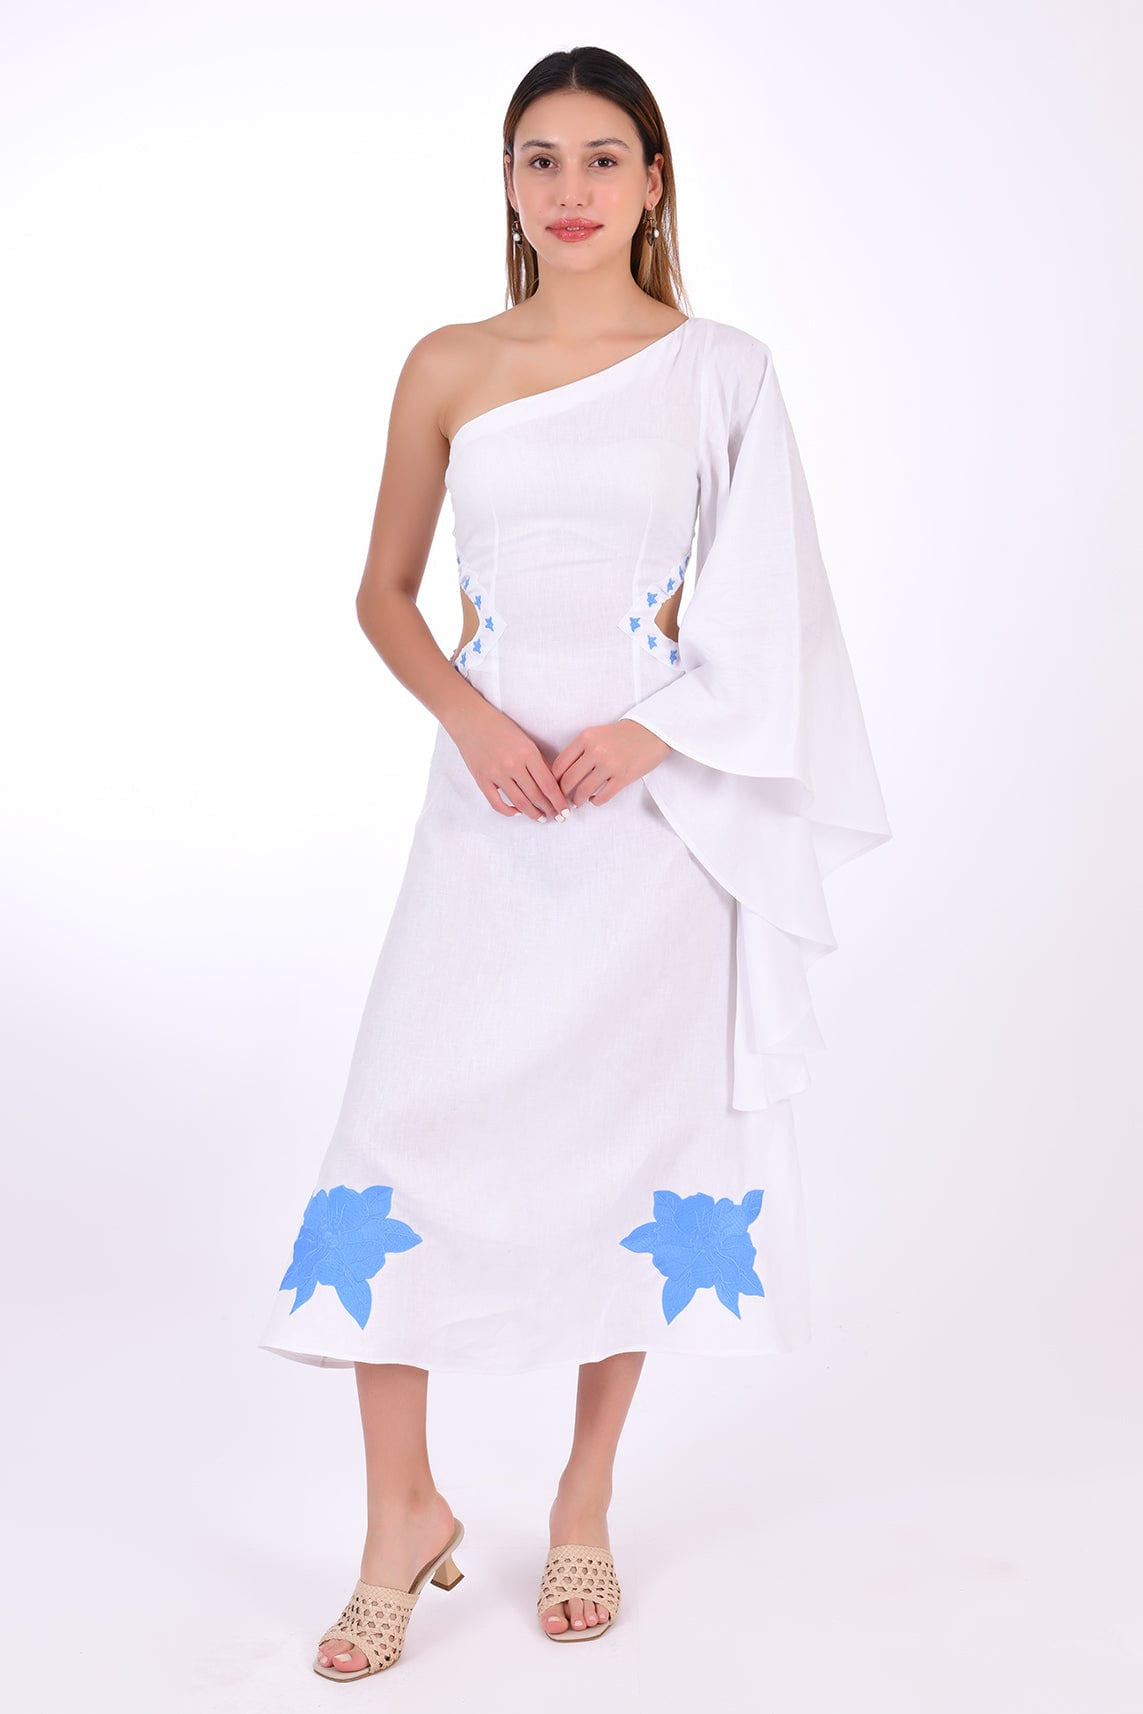 Fanm Mon Dress L / White Narma Marassa